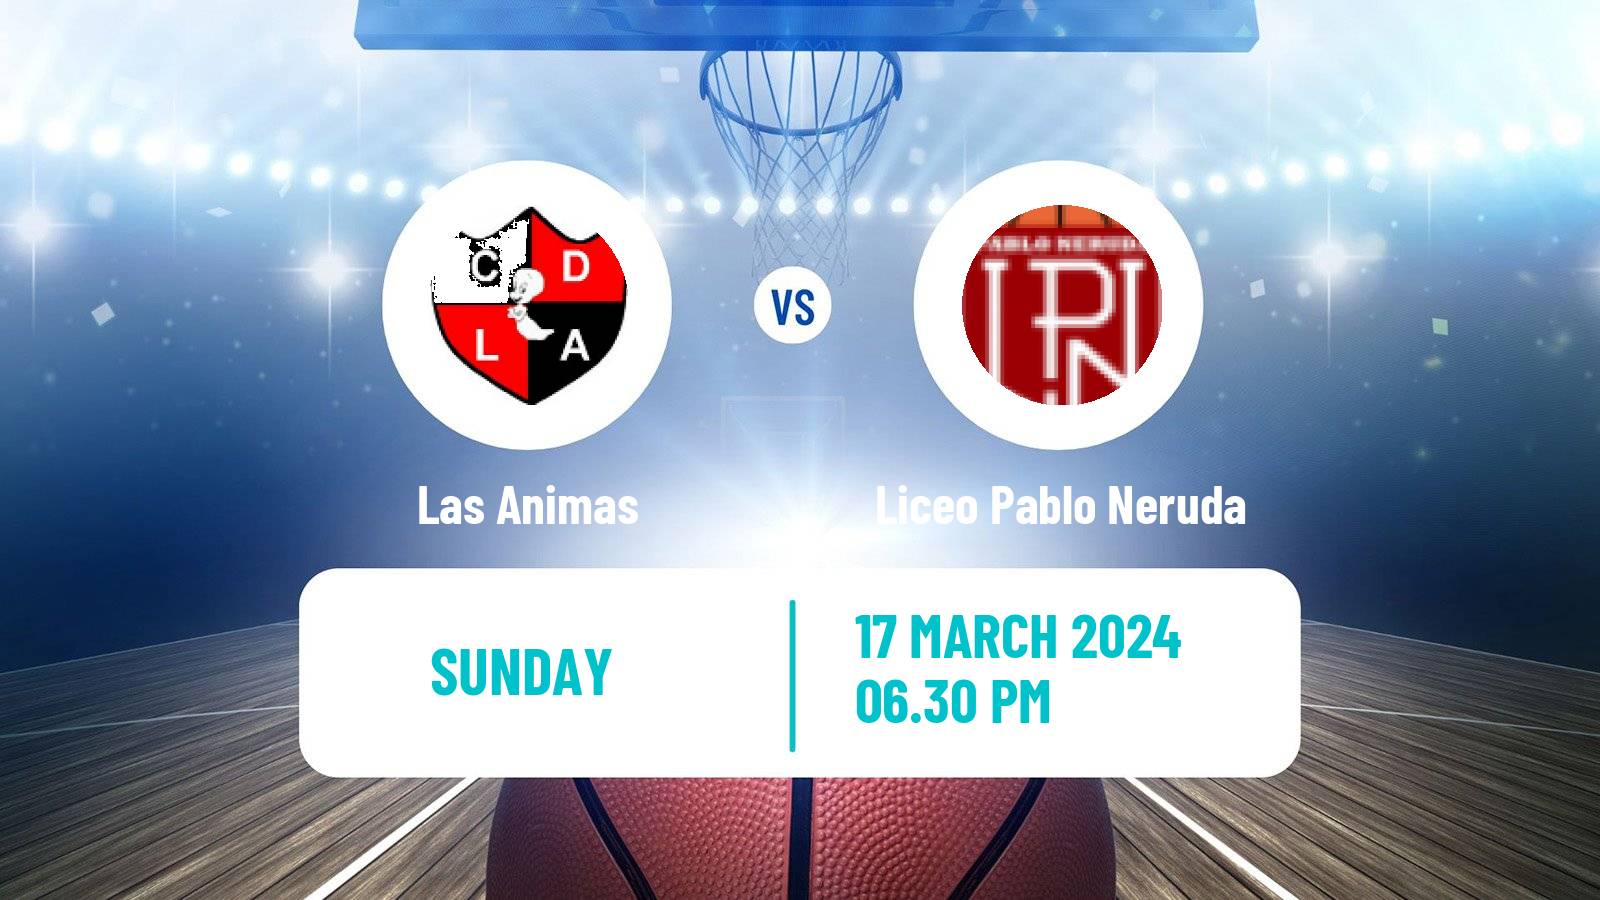 Basketball Chilean LNB Las Animas - Liceo Pablo Neruda